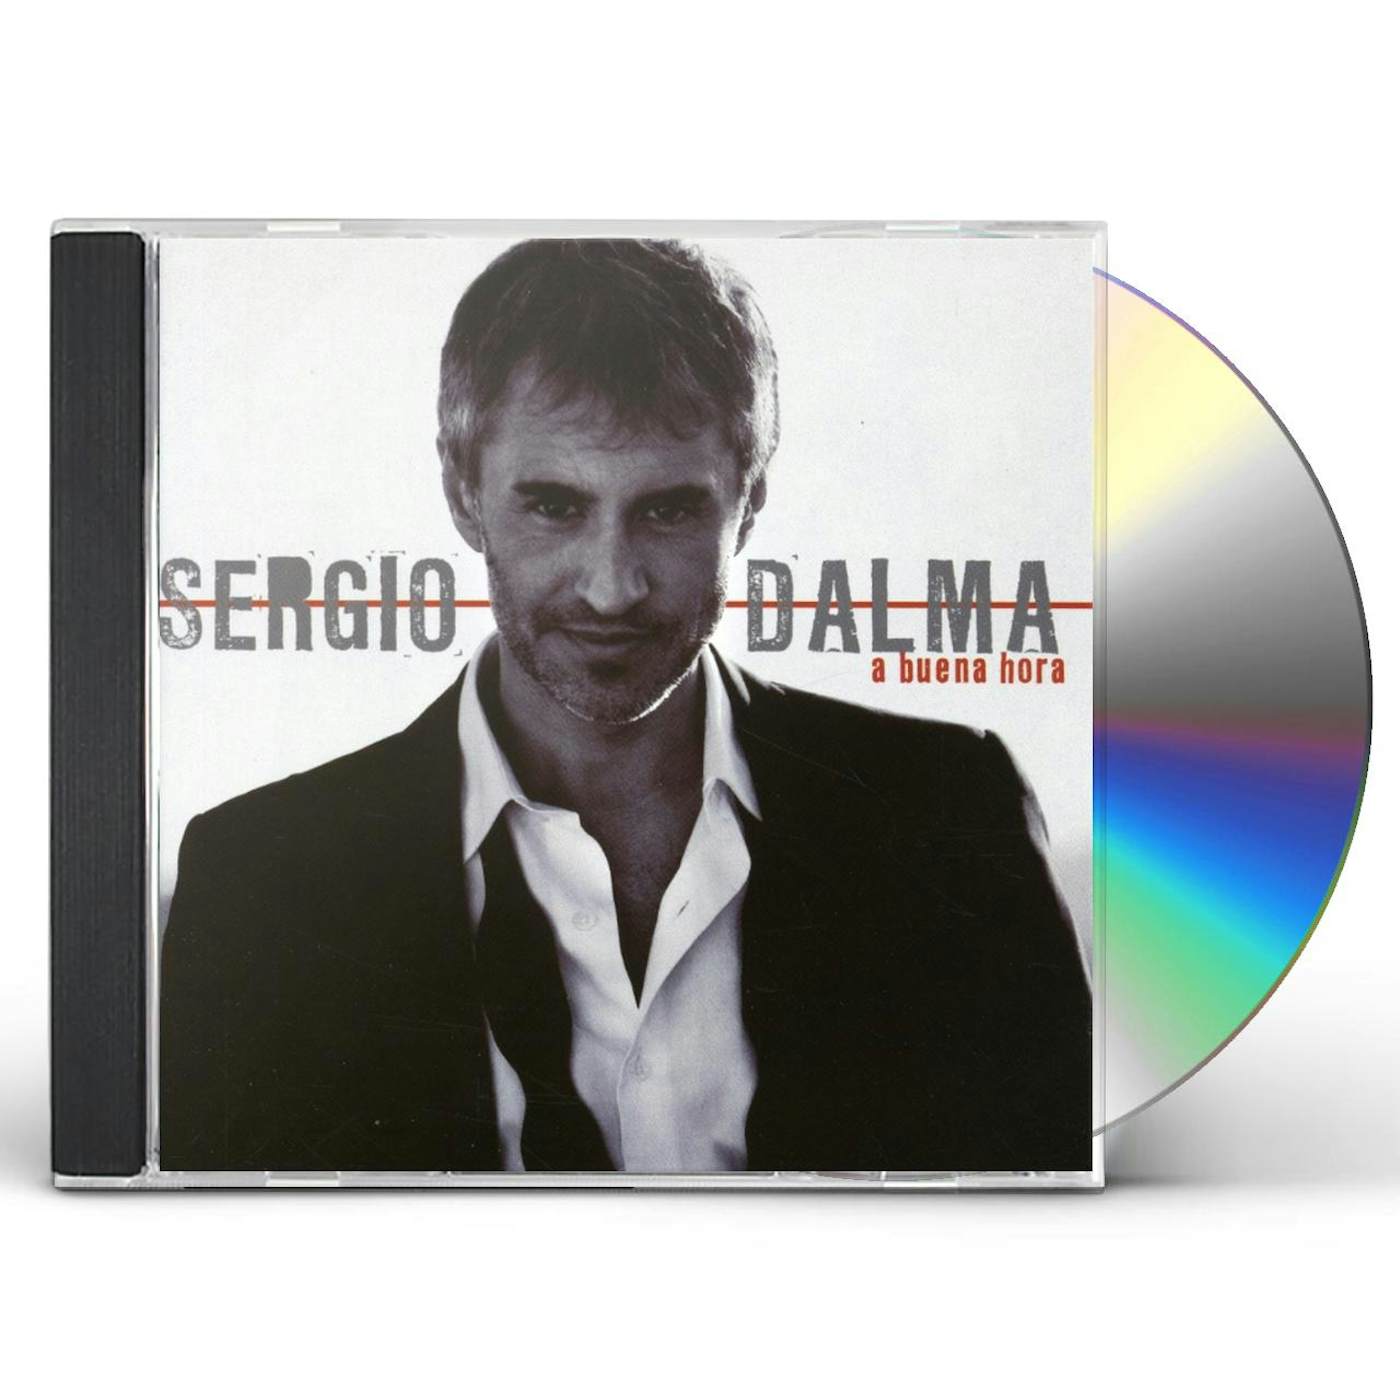 Sergio Dalma A BUENA HORA CD